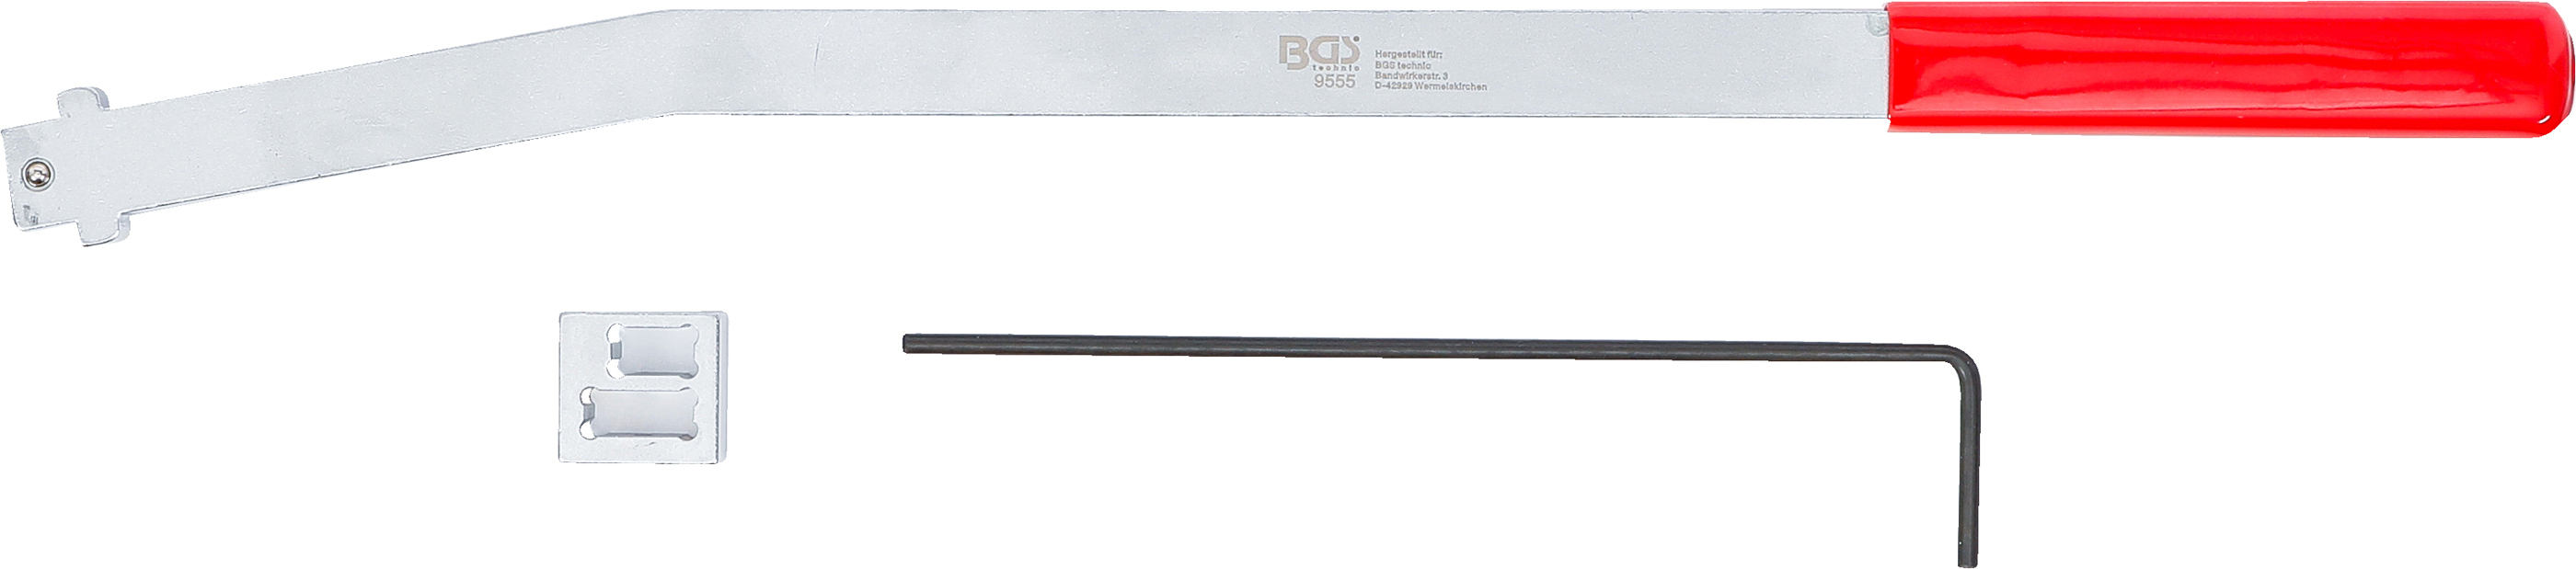 BGS Keilrippenriemenspanner-Werkzeug-Satz | für Citroen, Peugeot, Fiat, Ford 1.4L & 1.6L Diesel